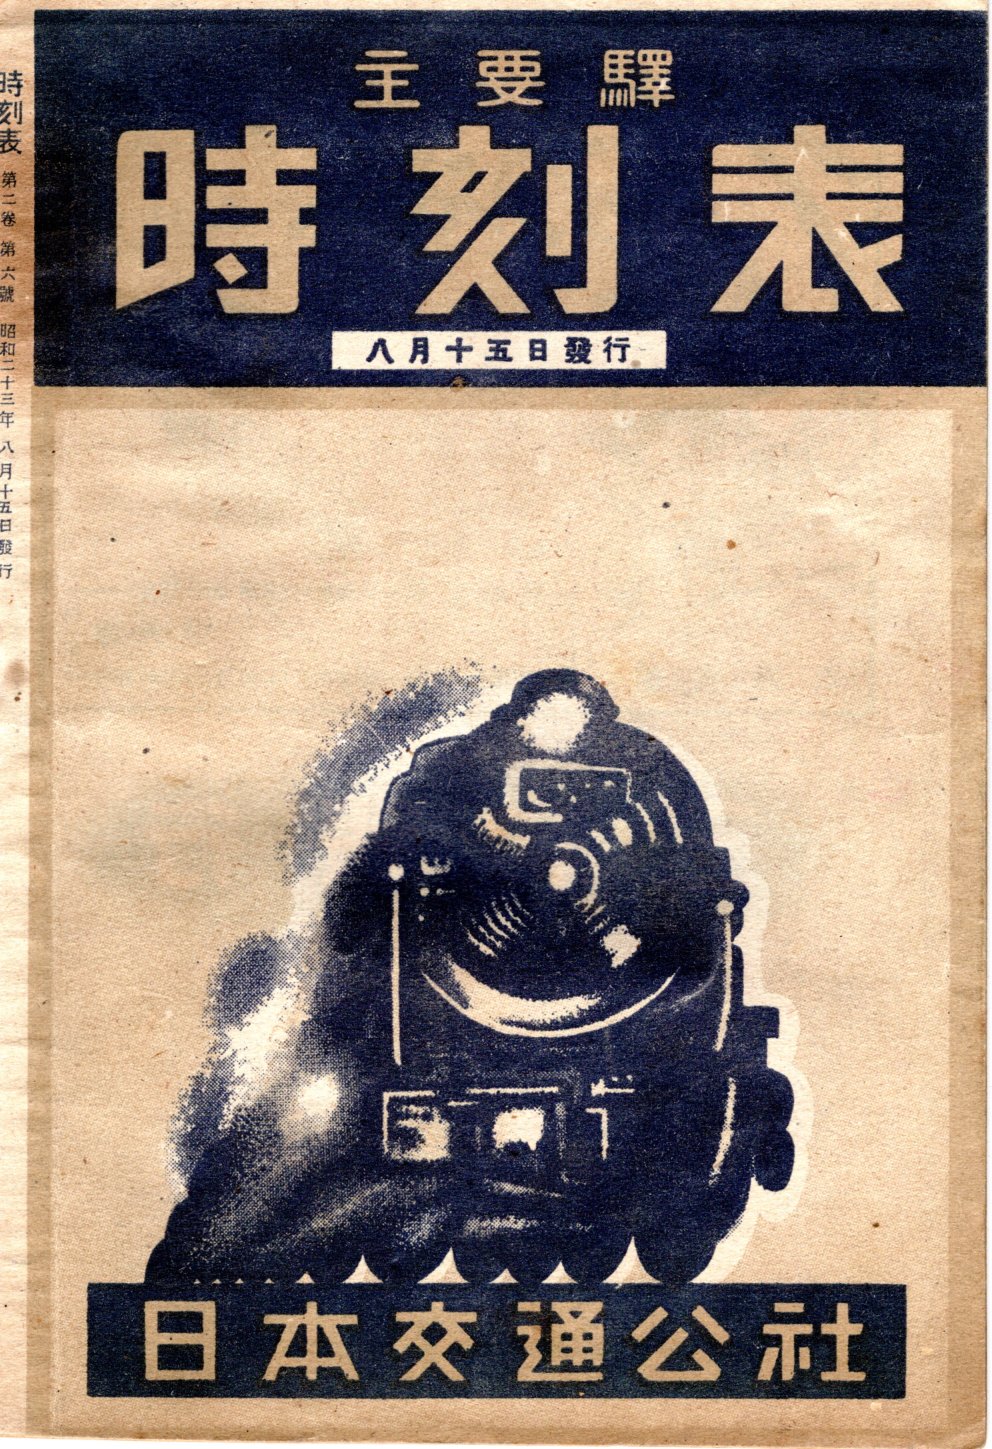 JTB時刻表1948年8月号